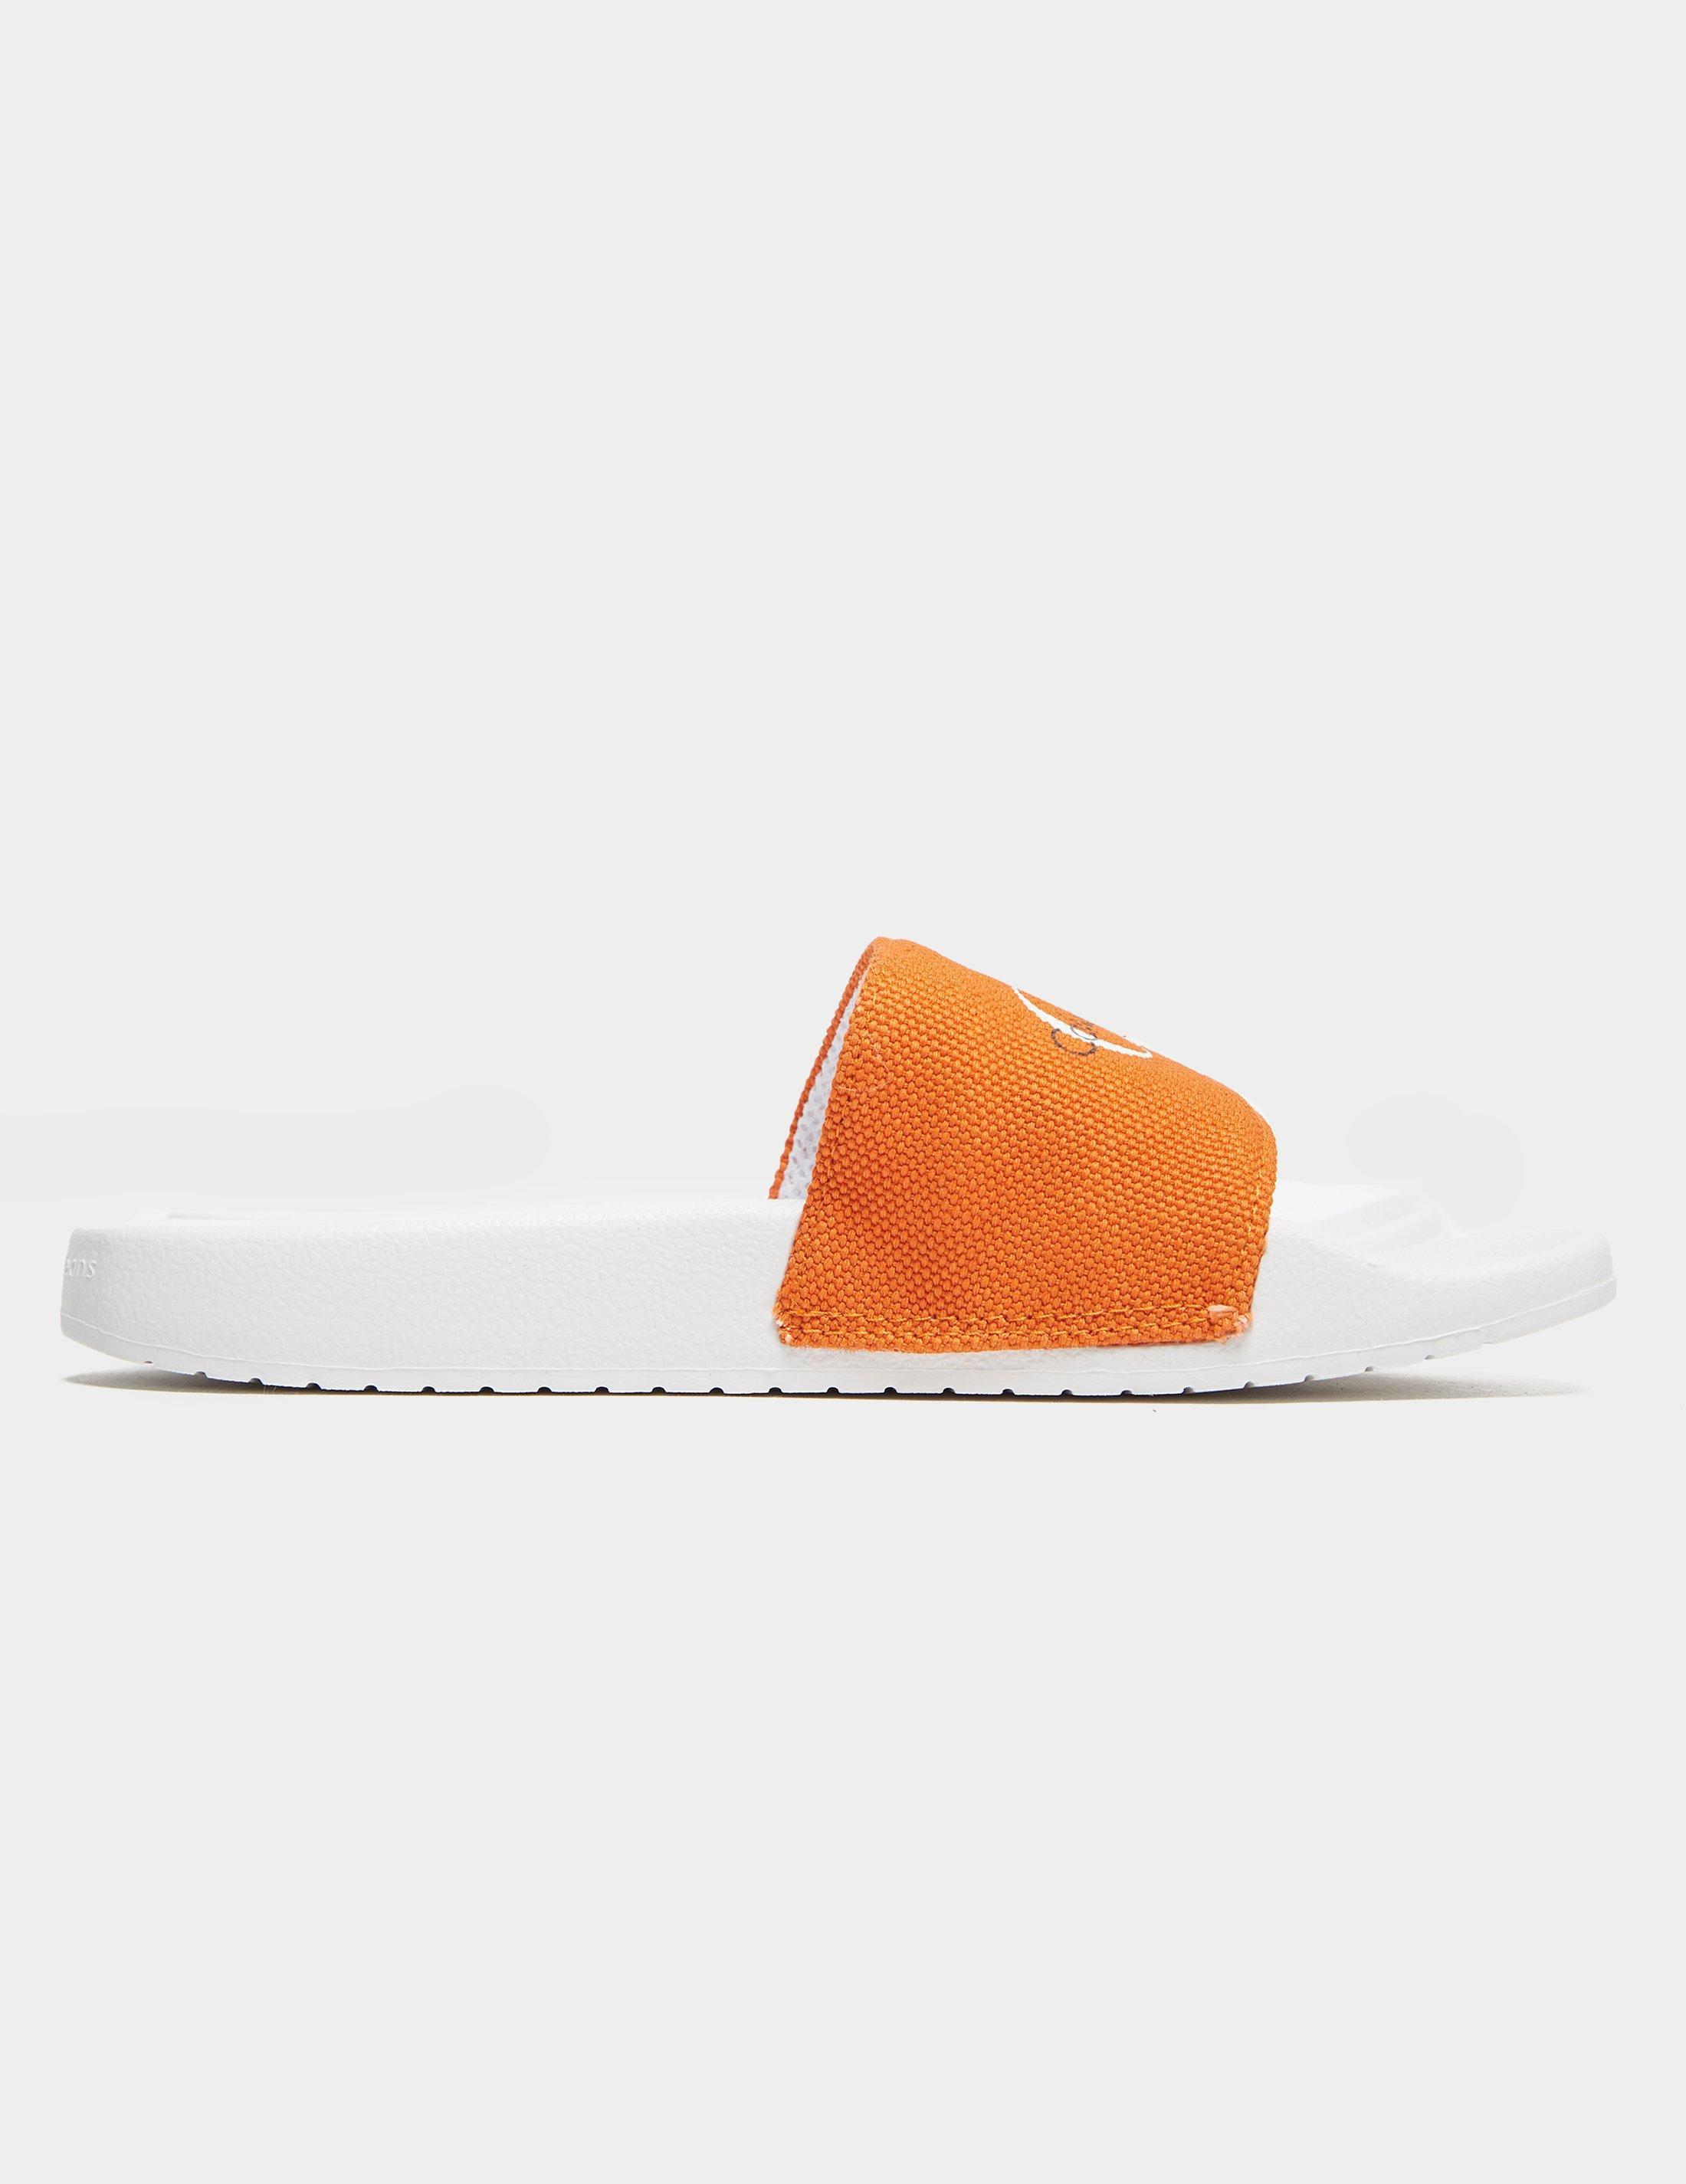 Calvin Klein Chantal Slides Orange | Lyst